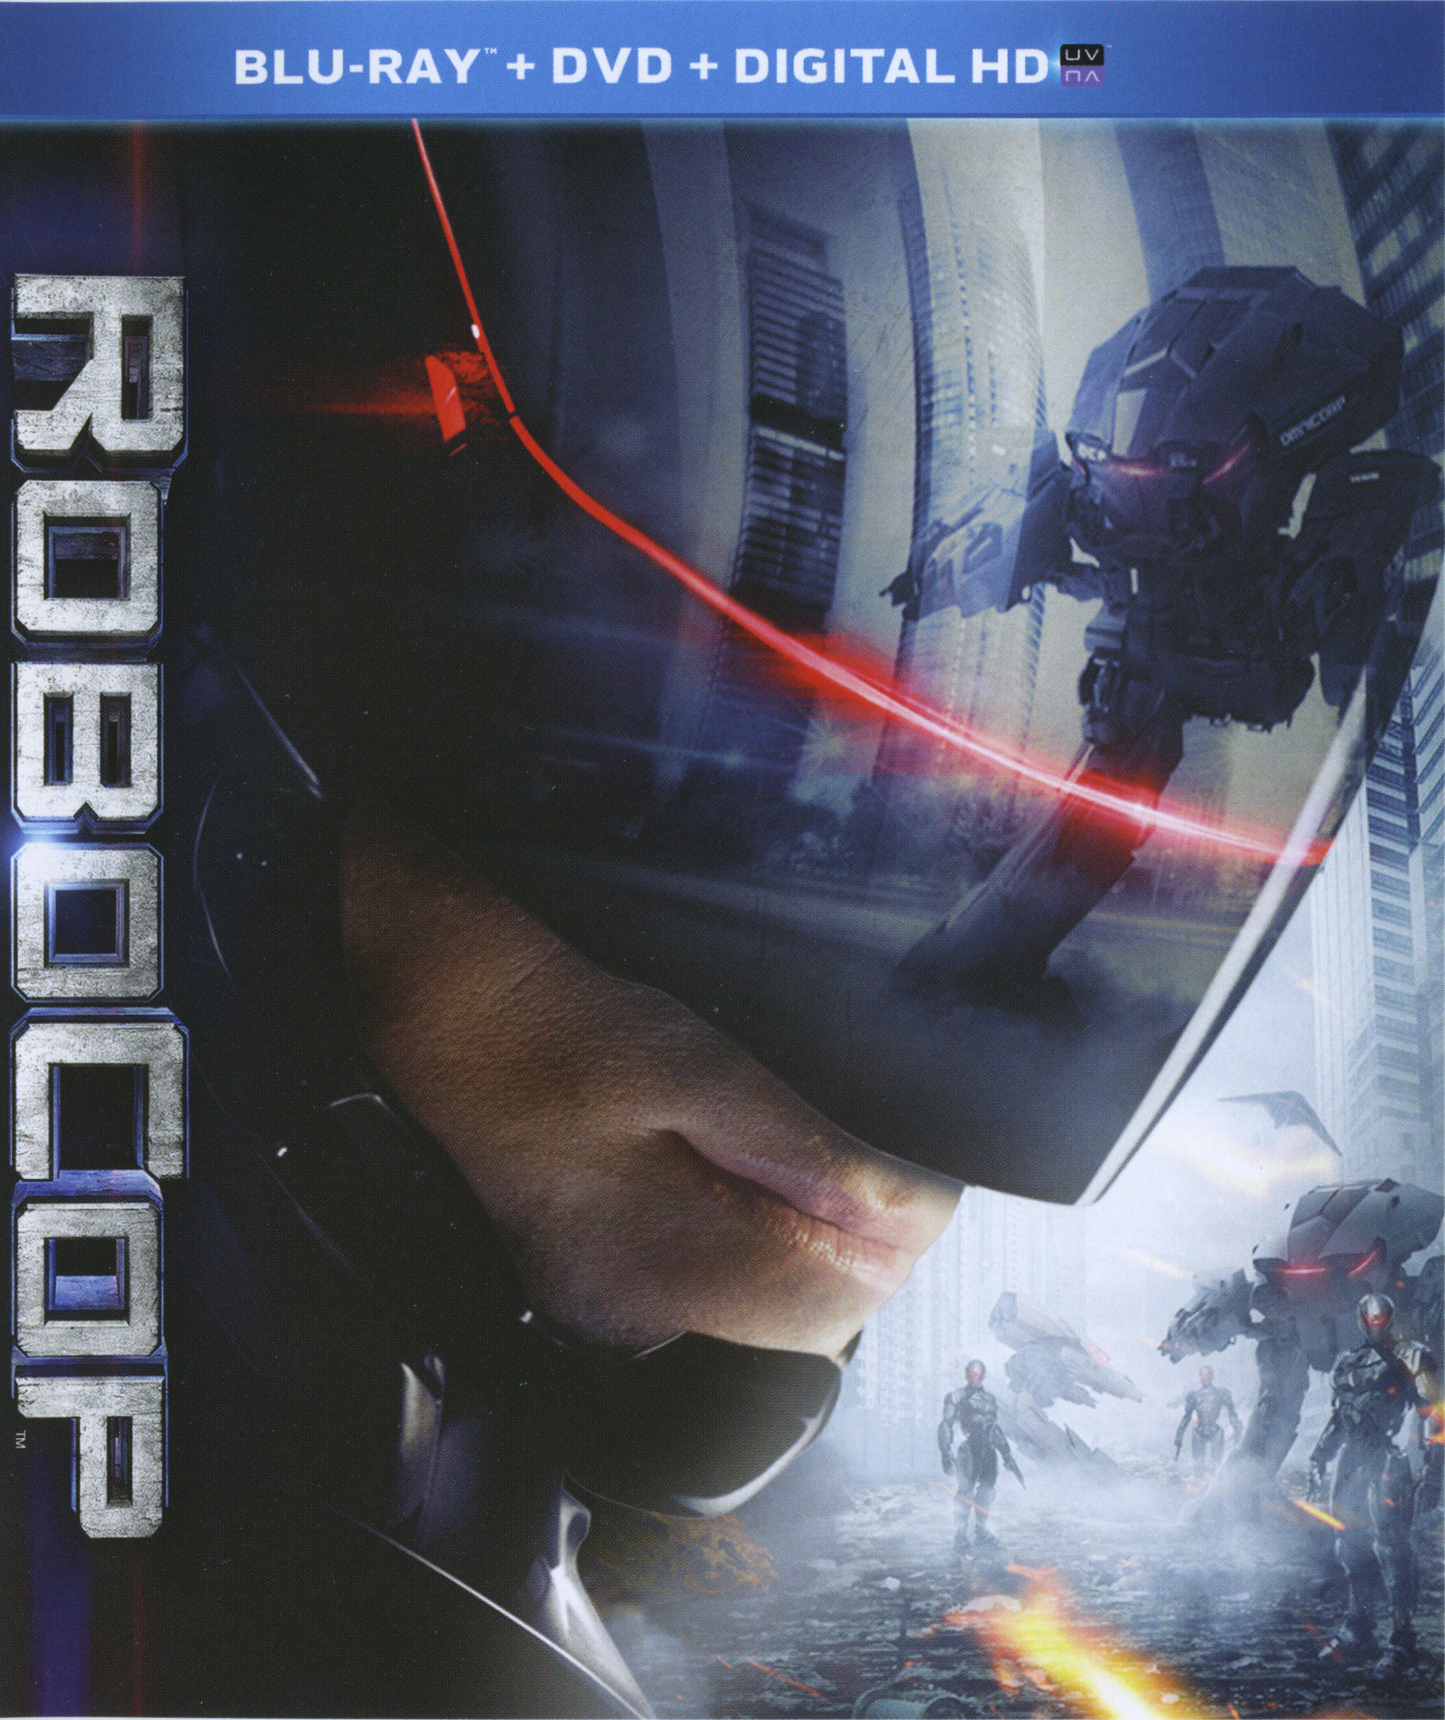 RoboCop - Blu-ray SciFi 2014 PG-13